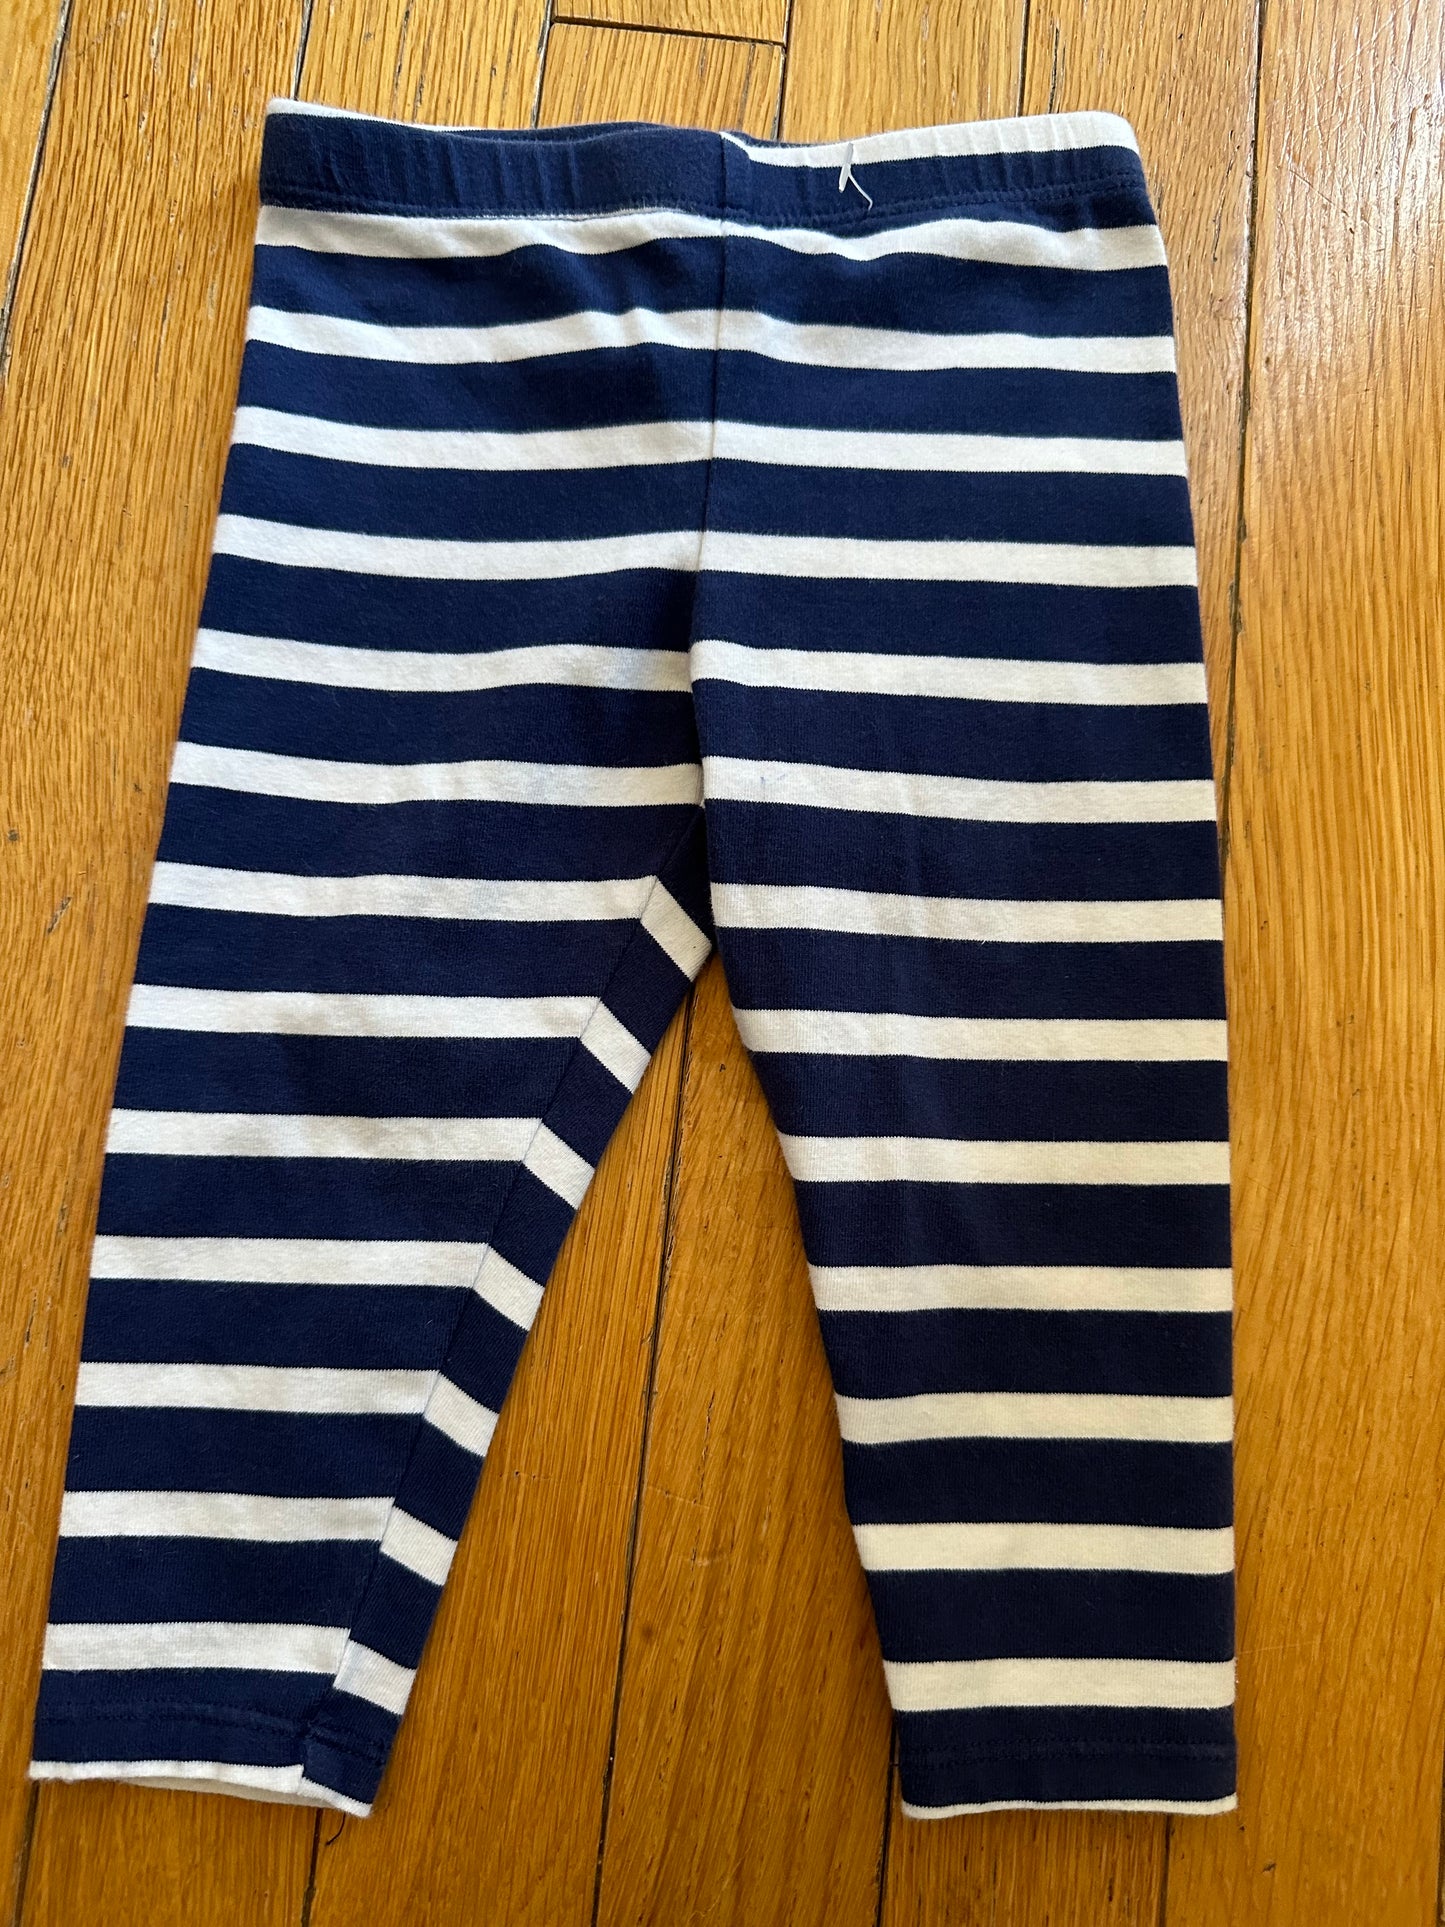 Kate Spade Girls Sz 12 months Striped Pants